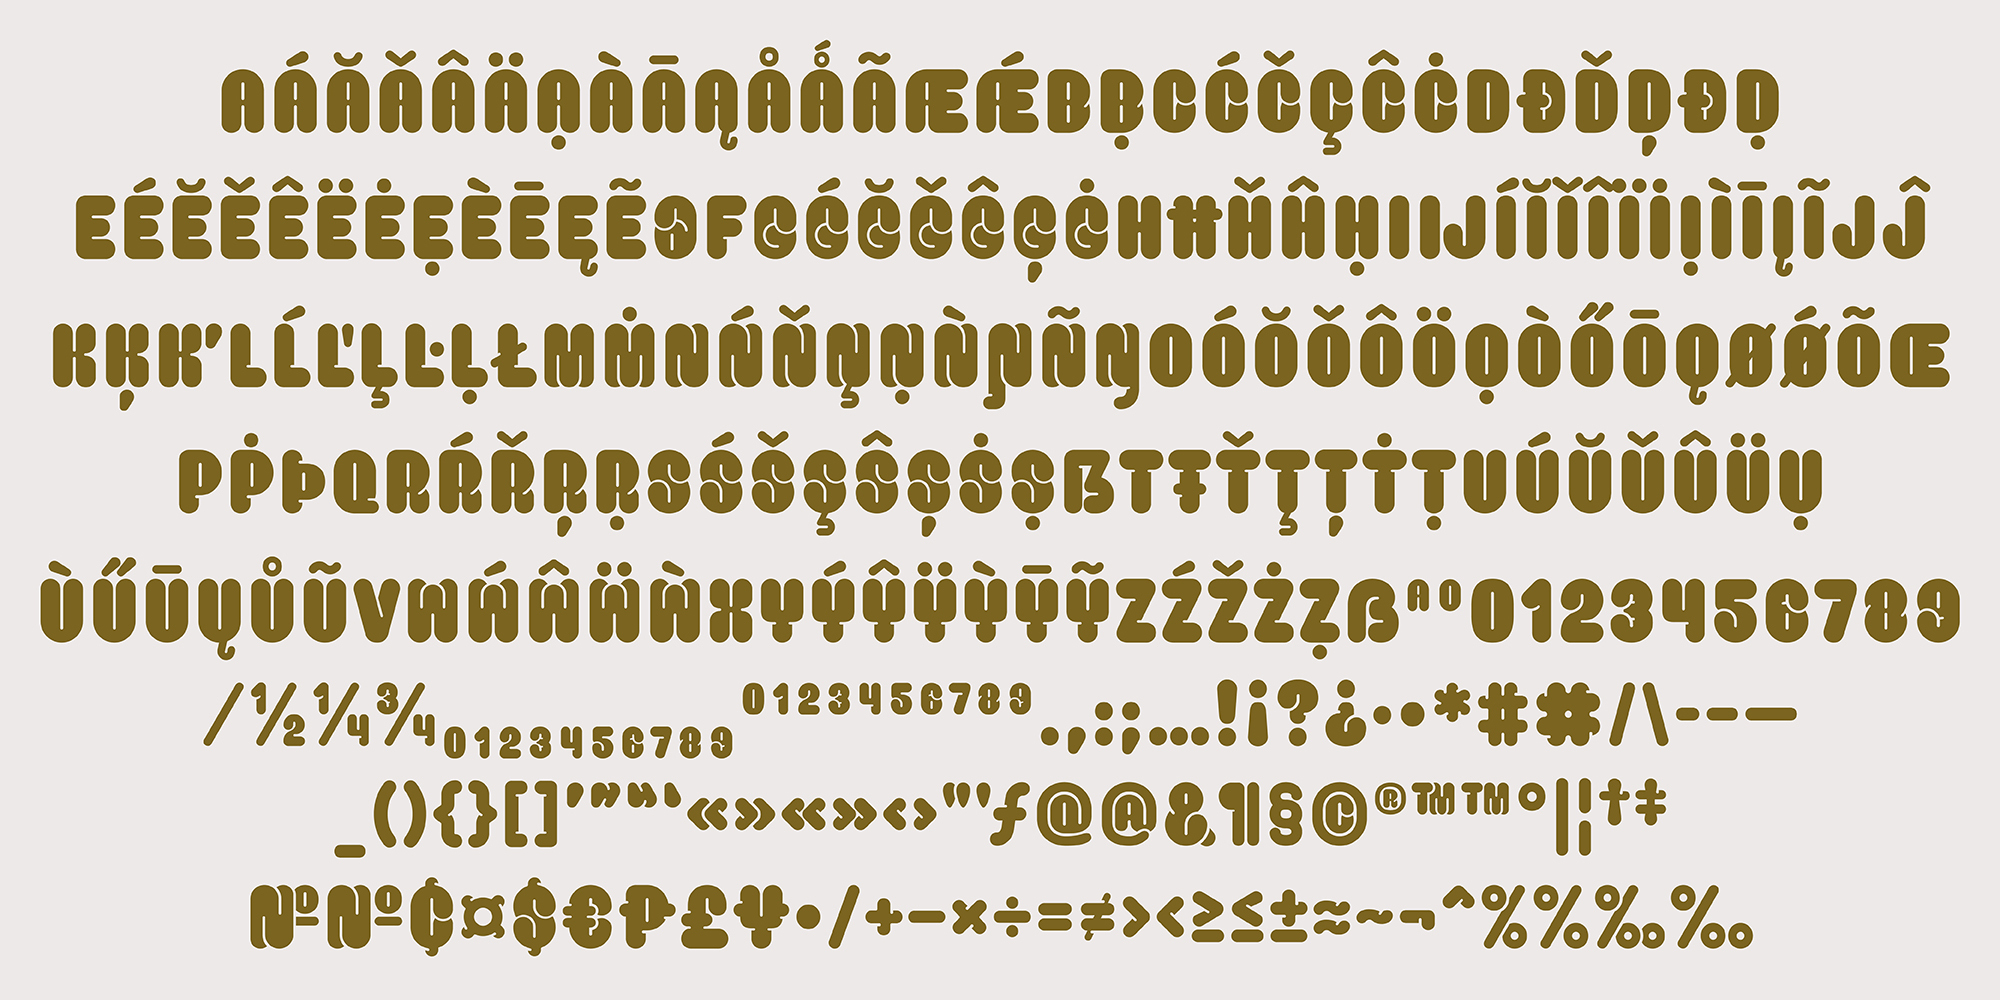 Card displaying Salbabida Sans Pro typeface in various styles